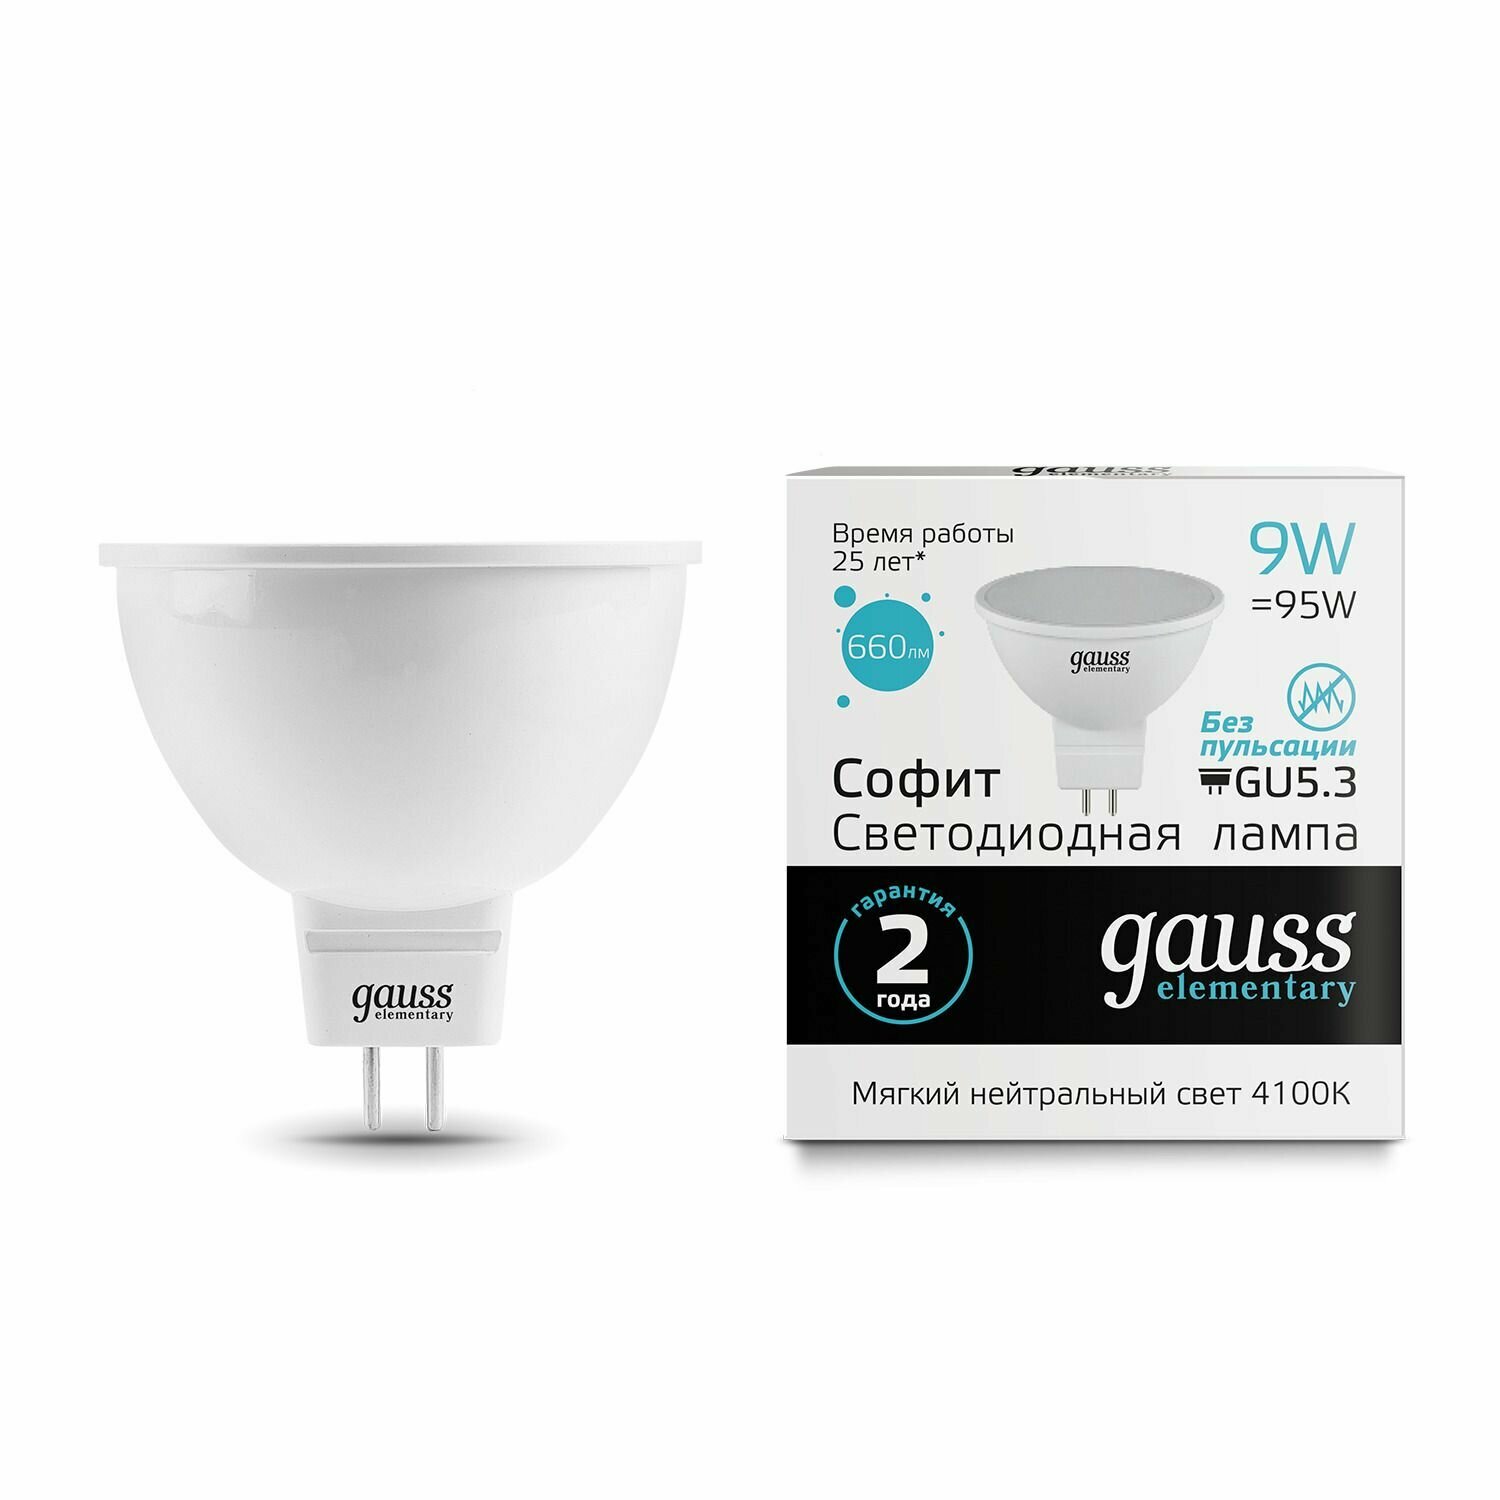 13529 Лампа светодиодная Gauss MR16 9W 660lm 4100K GU5.3, упаковка 1шт